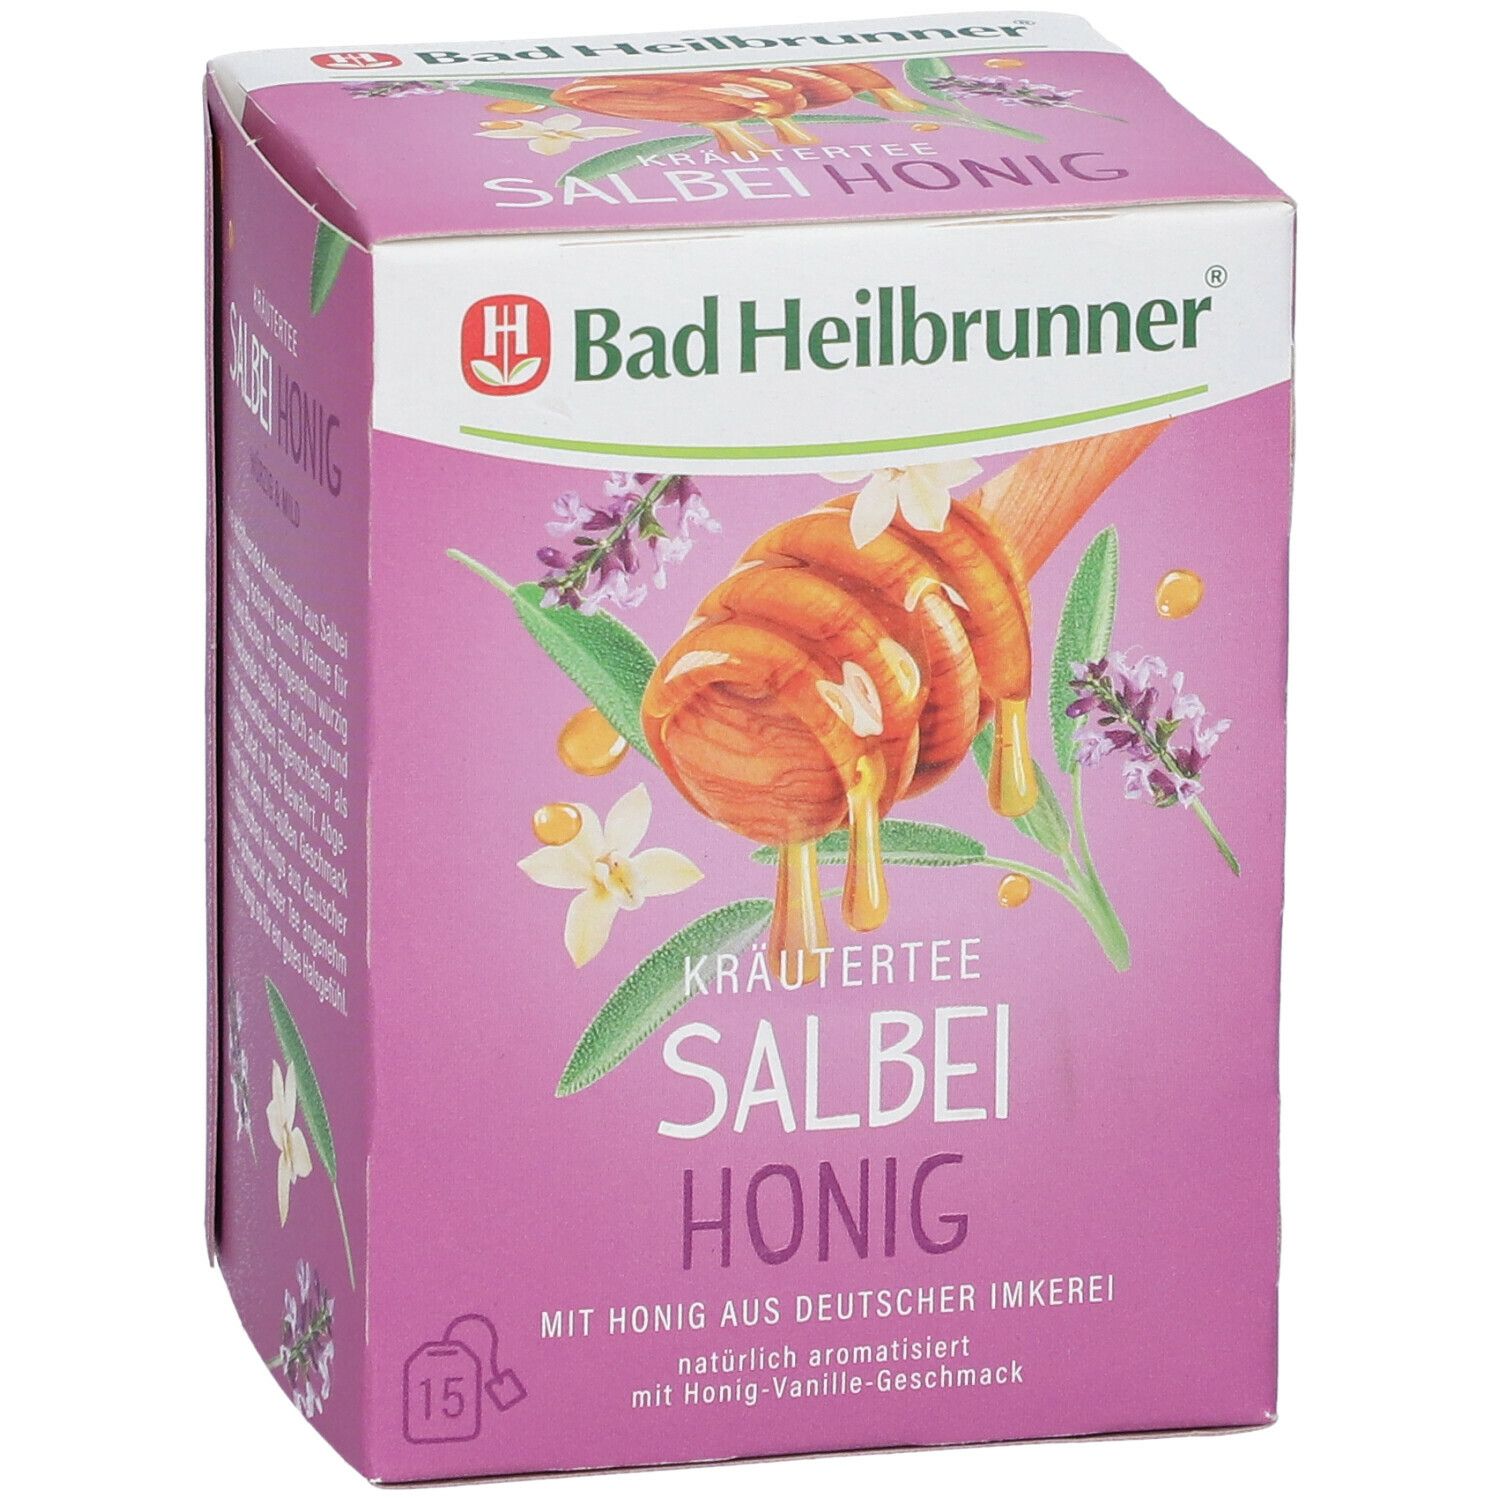 Bad Heilbrunner® Salbei-Honig Tee